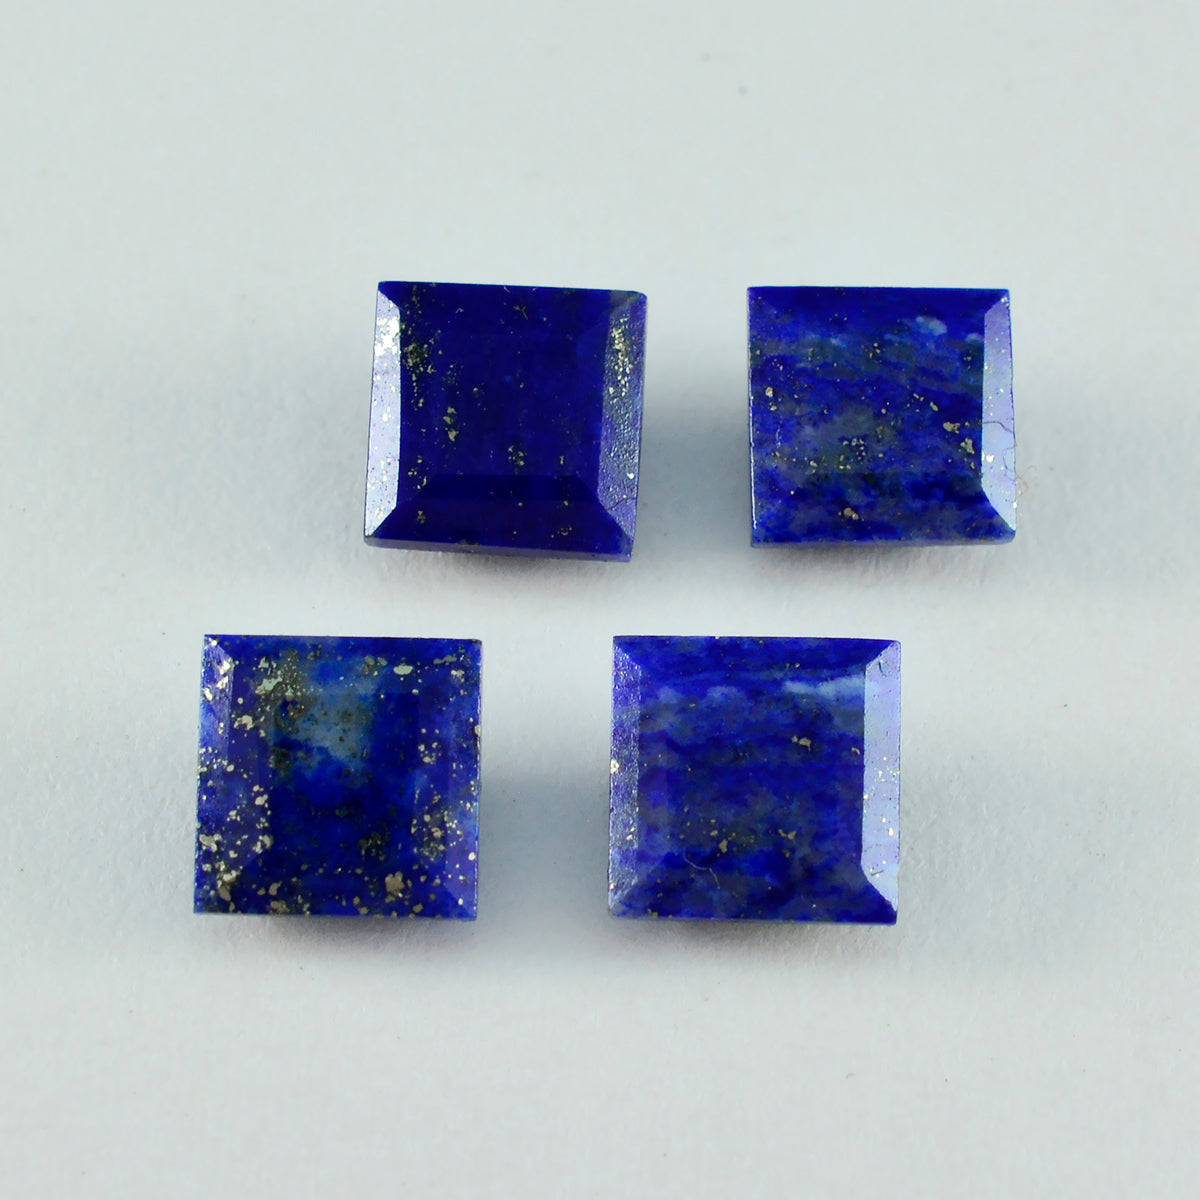 Riyogems 1 pièce de lapis-lazuli bleu véritable à facettes 9x9 mm forme carrée pierre précieuse de qualité étonnante